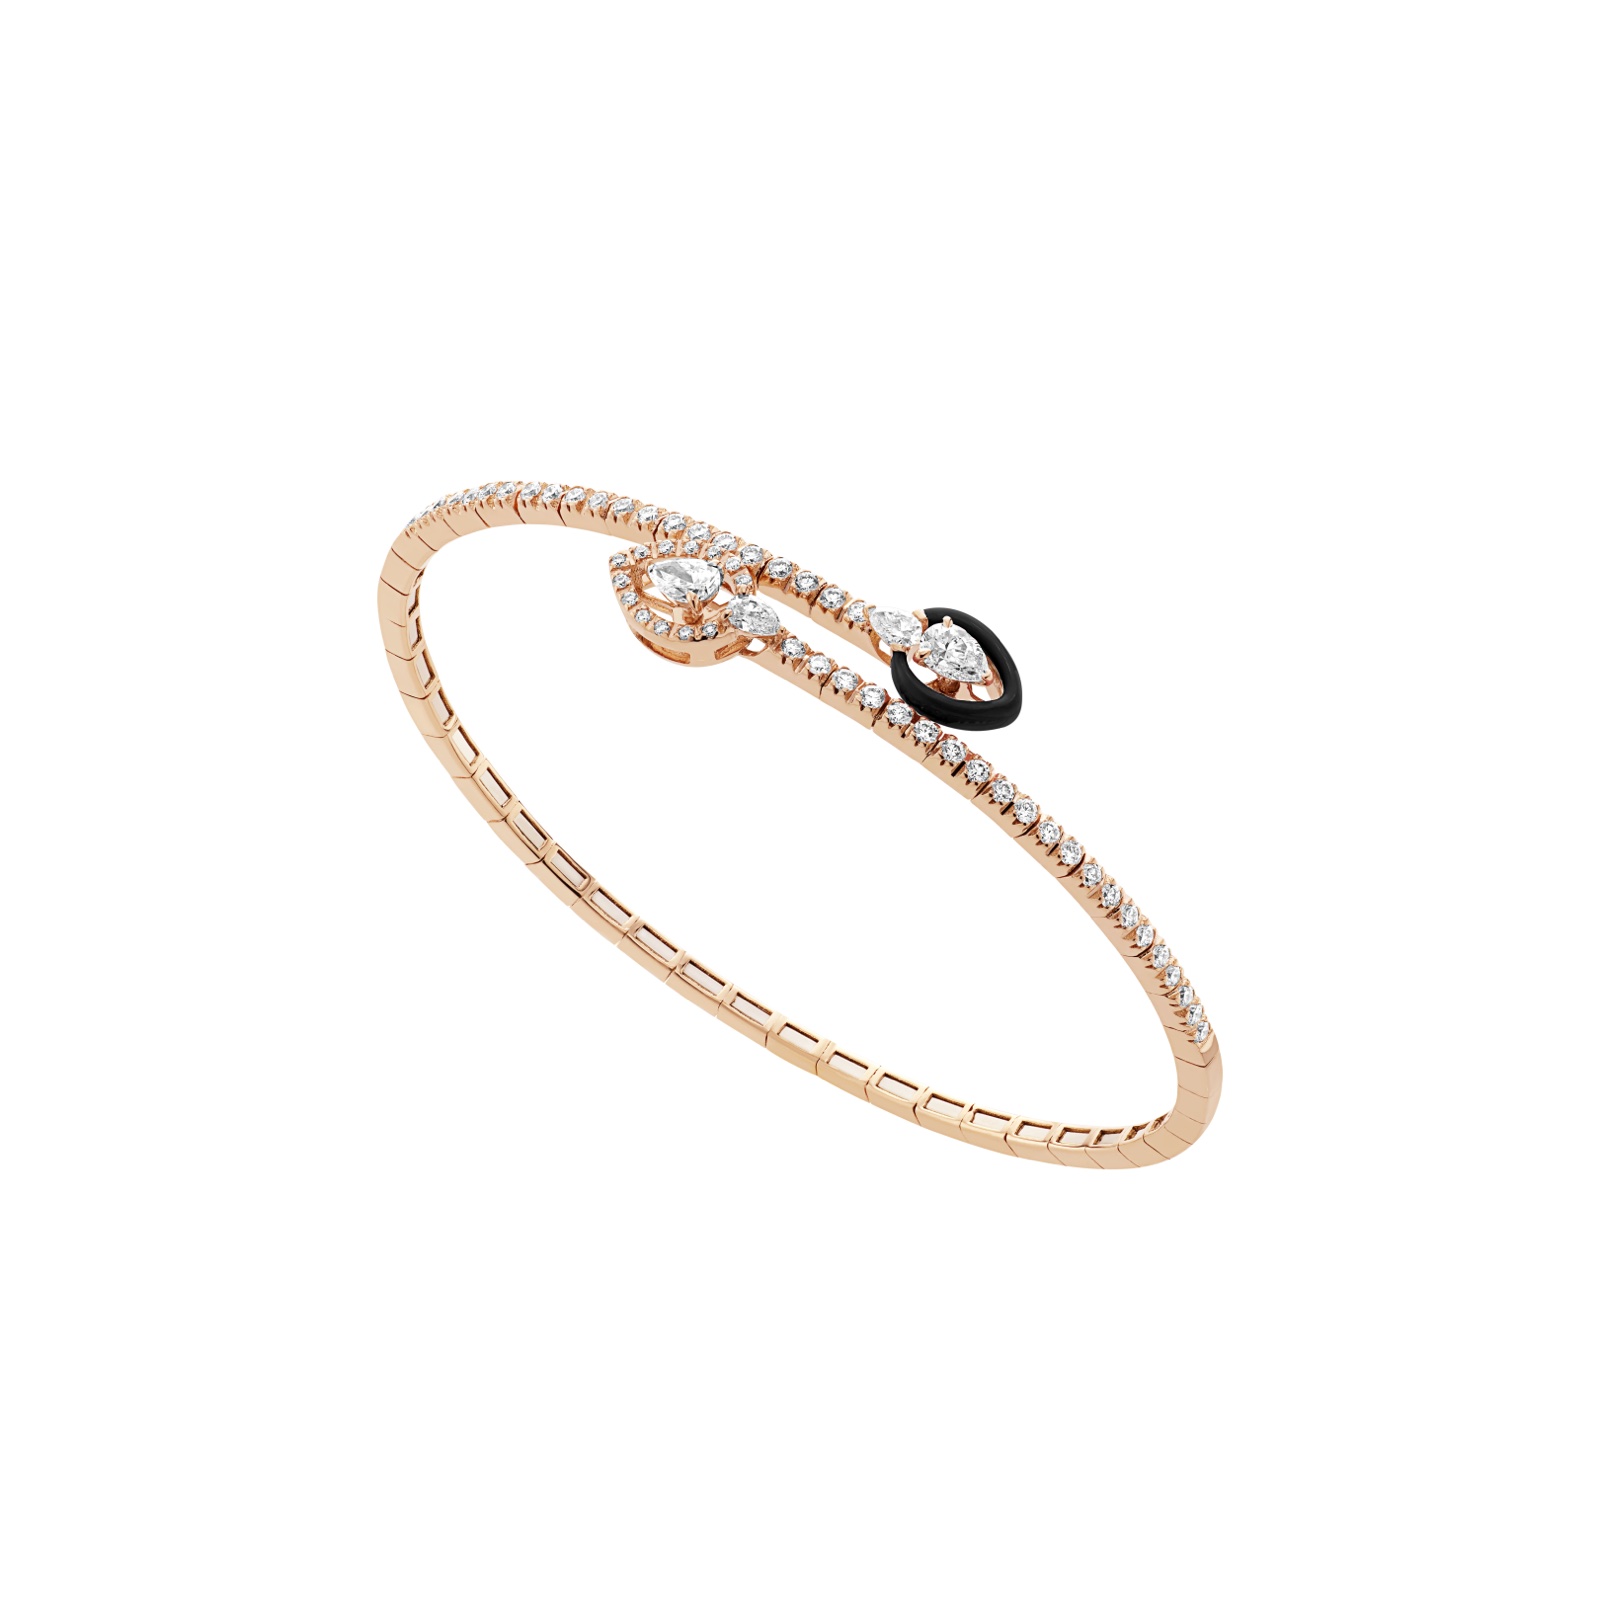 Pink Gold Bracelet with Diamonds and black Enamel BRX195BT-P-BKC16 by Casato